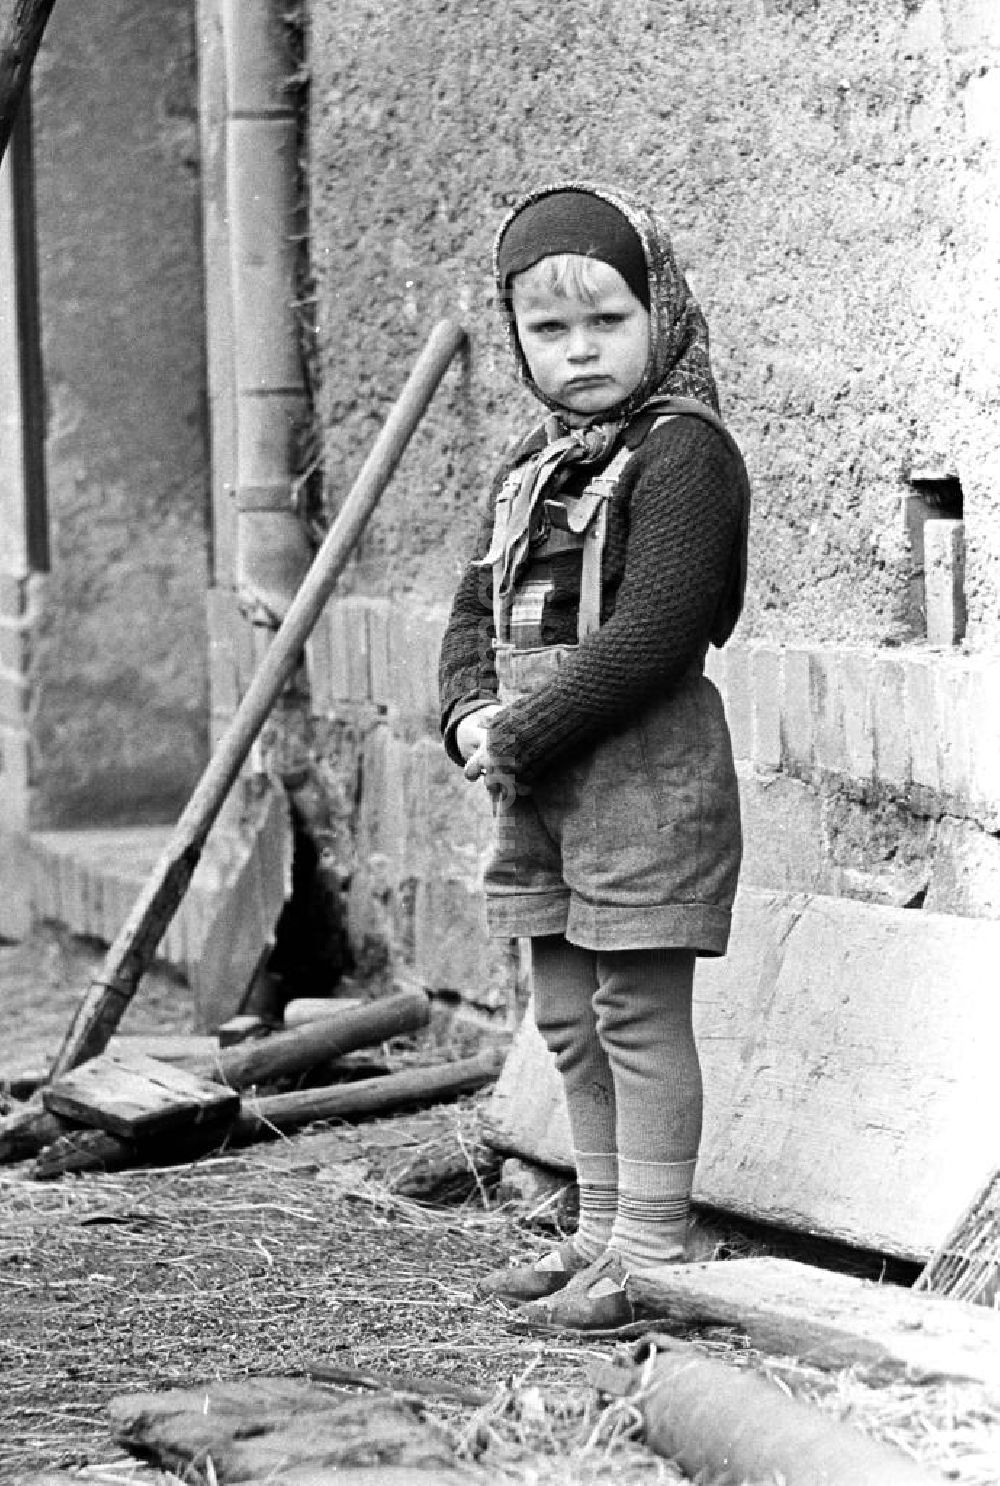 GDR picture archive: Leipzig - Mit dem Kopftuch von Mutti, der Lederhose des großen Bruders und der selbstgestrickten Jacke von Oma ist dieses Mädchen gut geschützt gegen die aufkommende Kälte des Spätherbstes.